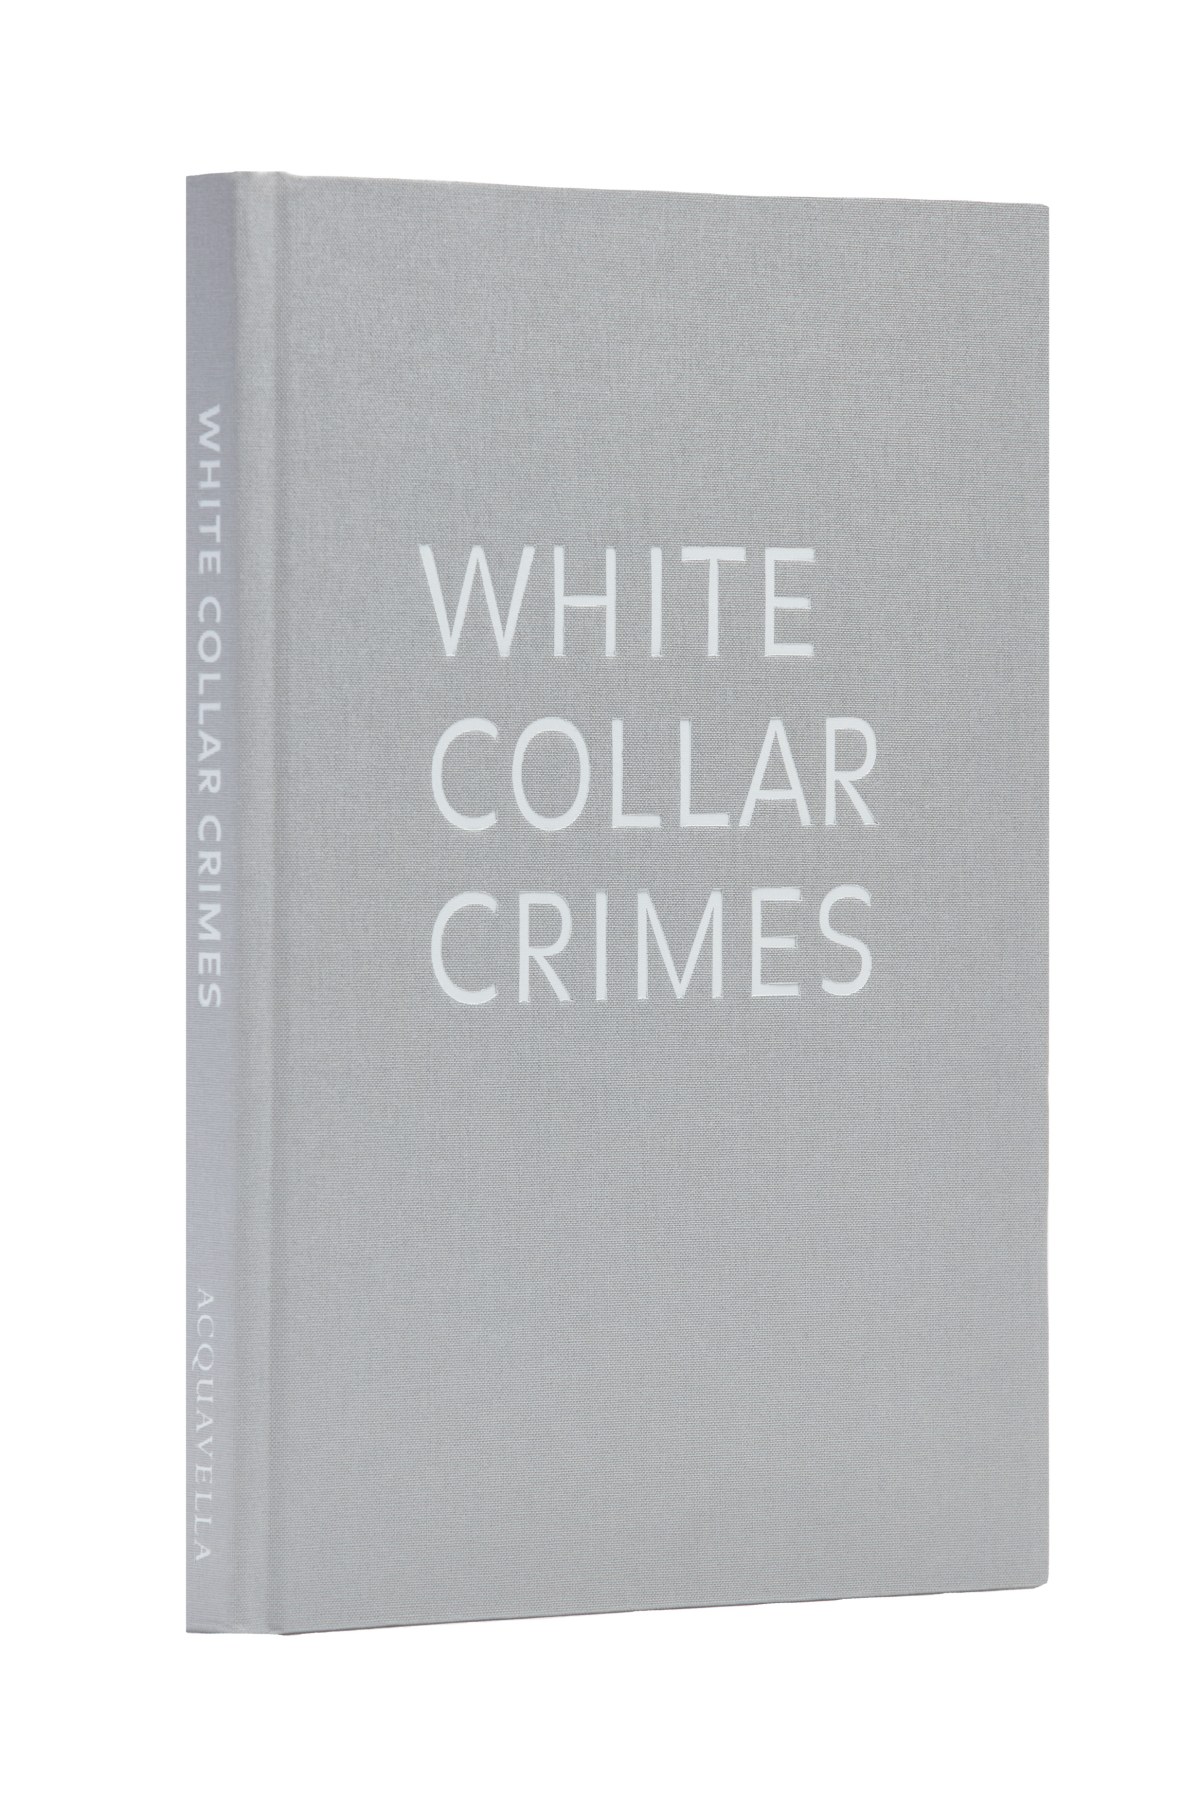 White Collar Crimes